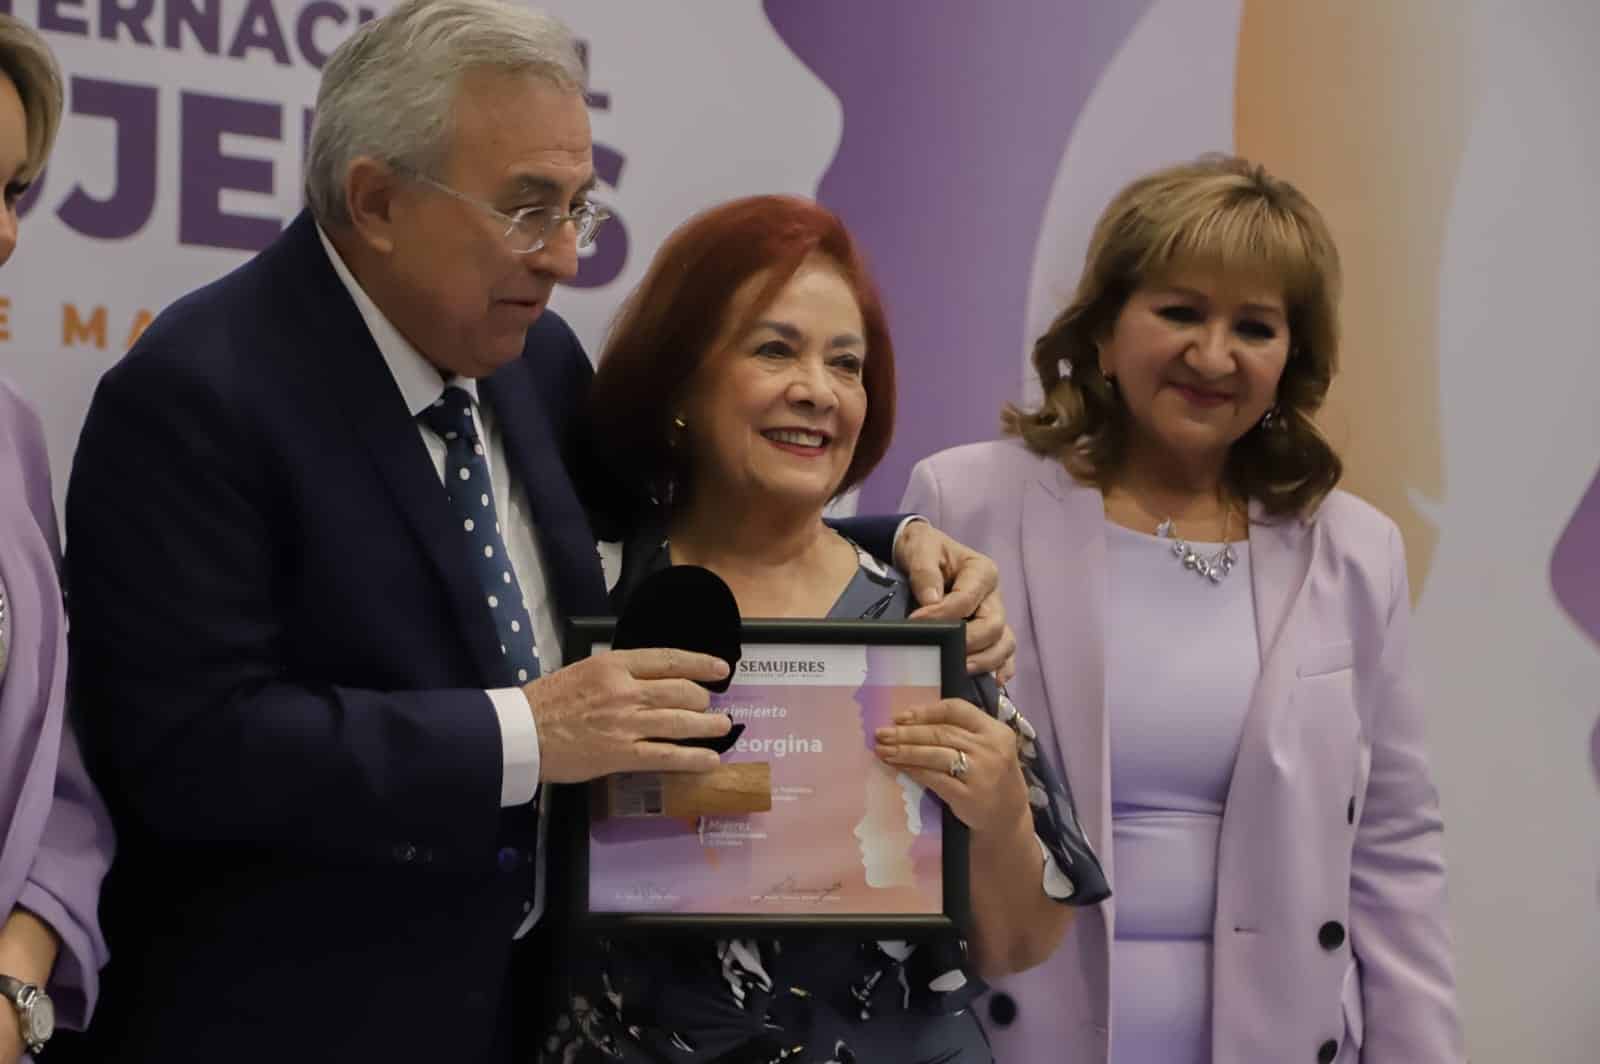 Rubén Rocha Moya, María Teresa Guerra Ochoa, Día Internacional de la Mujer, Reconocimientos